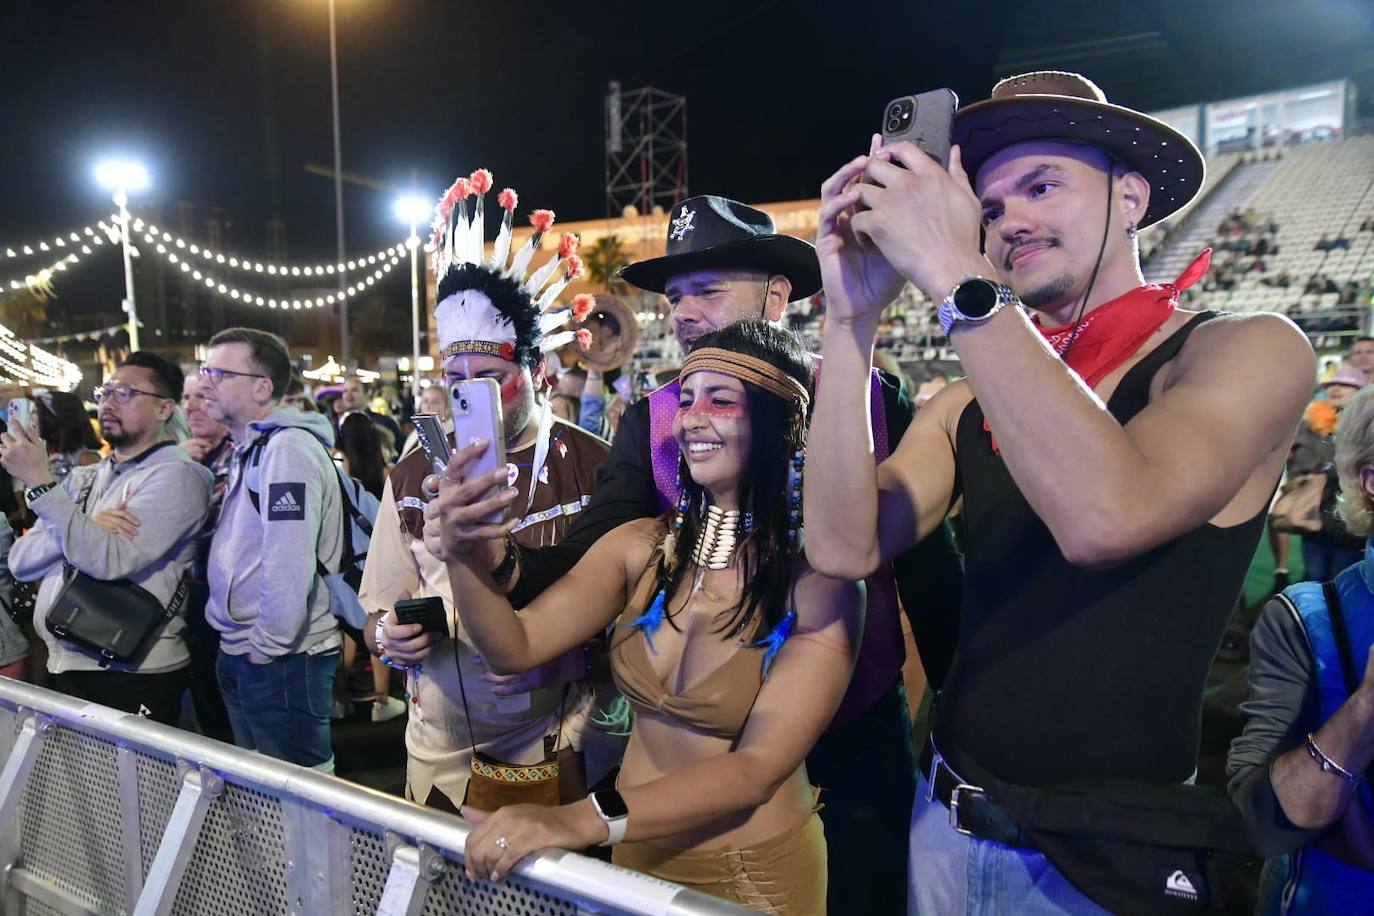 Los conciertos del lunes de carnaval llenan de fiesta a Las Palmas de Gran Canaria